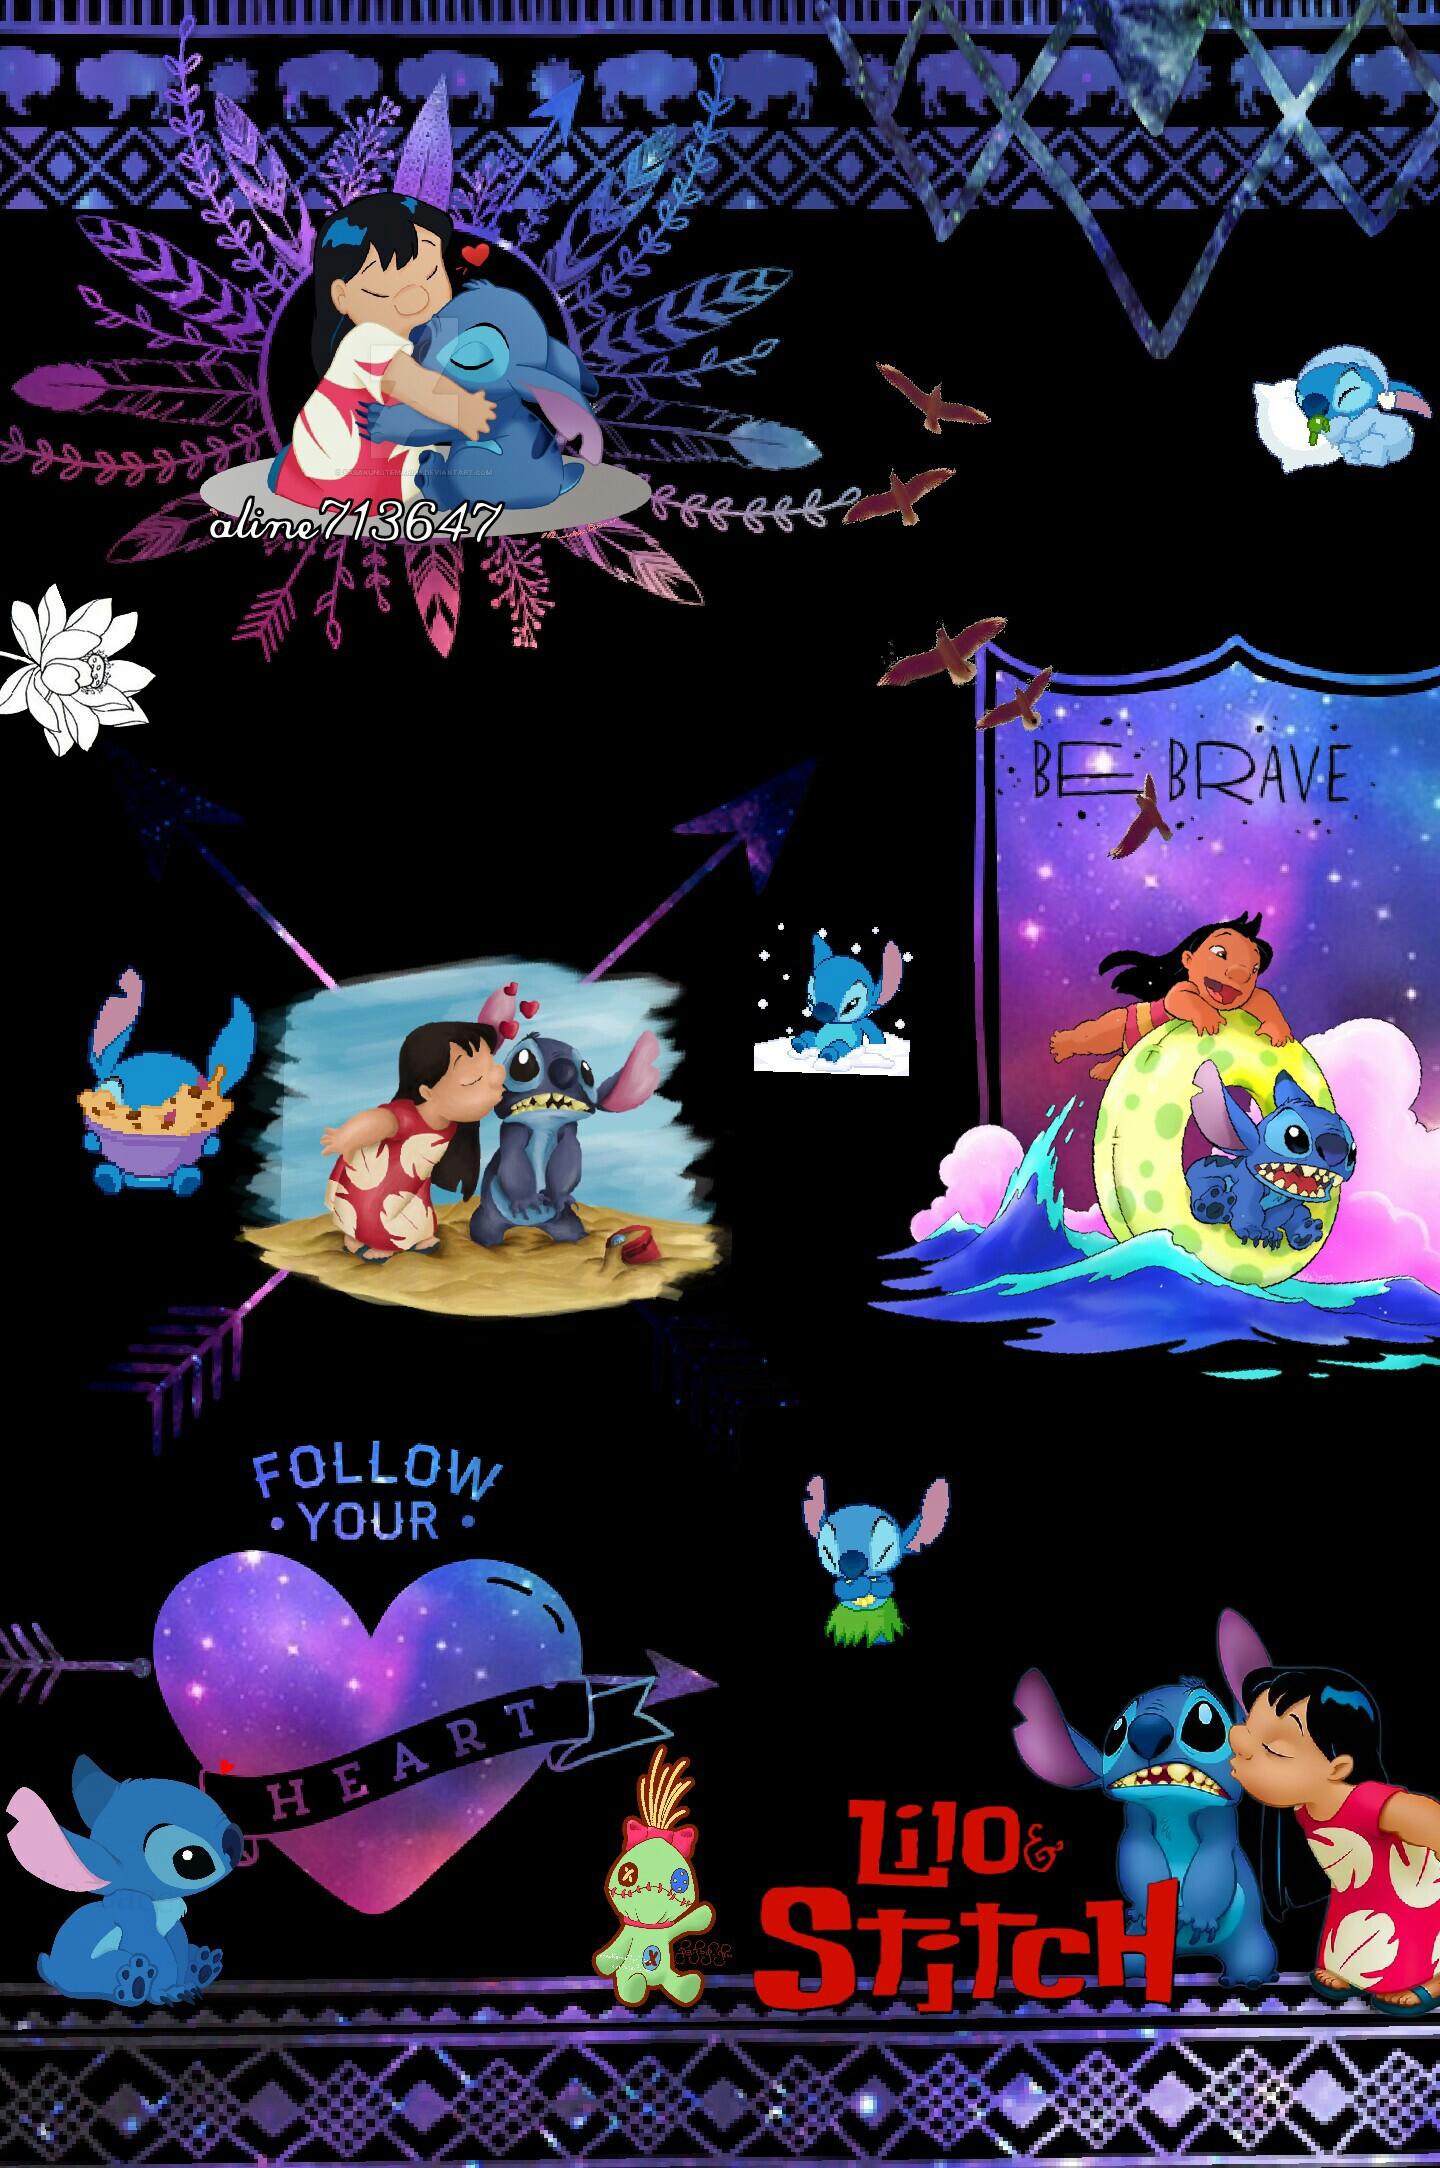 Lilo and Stitch collage